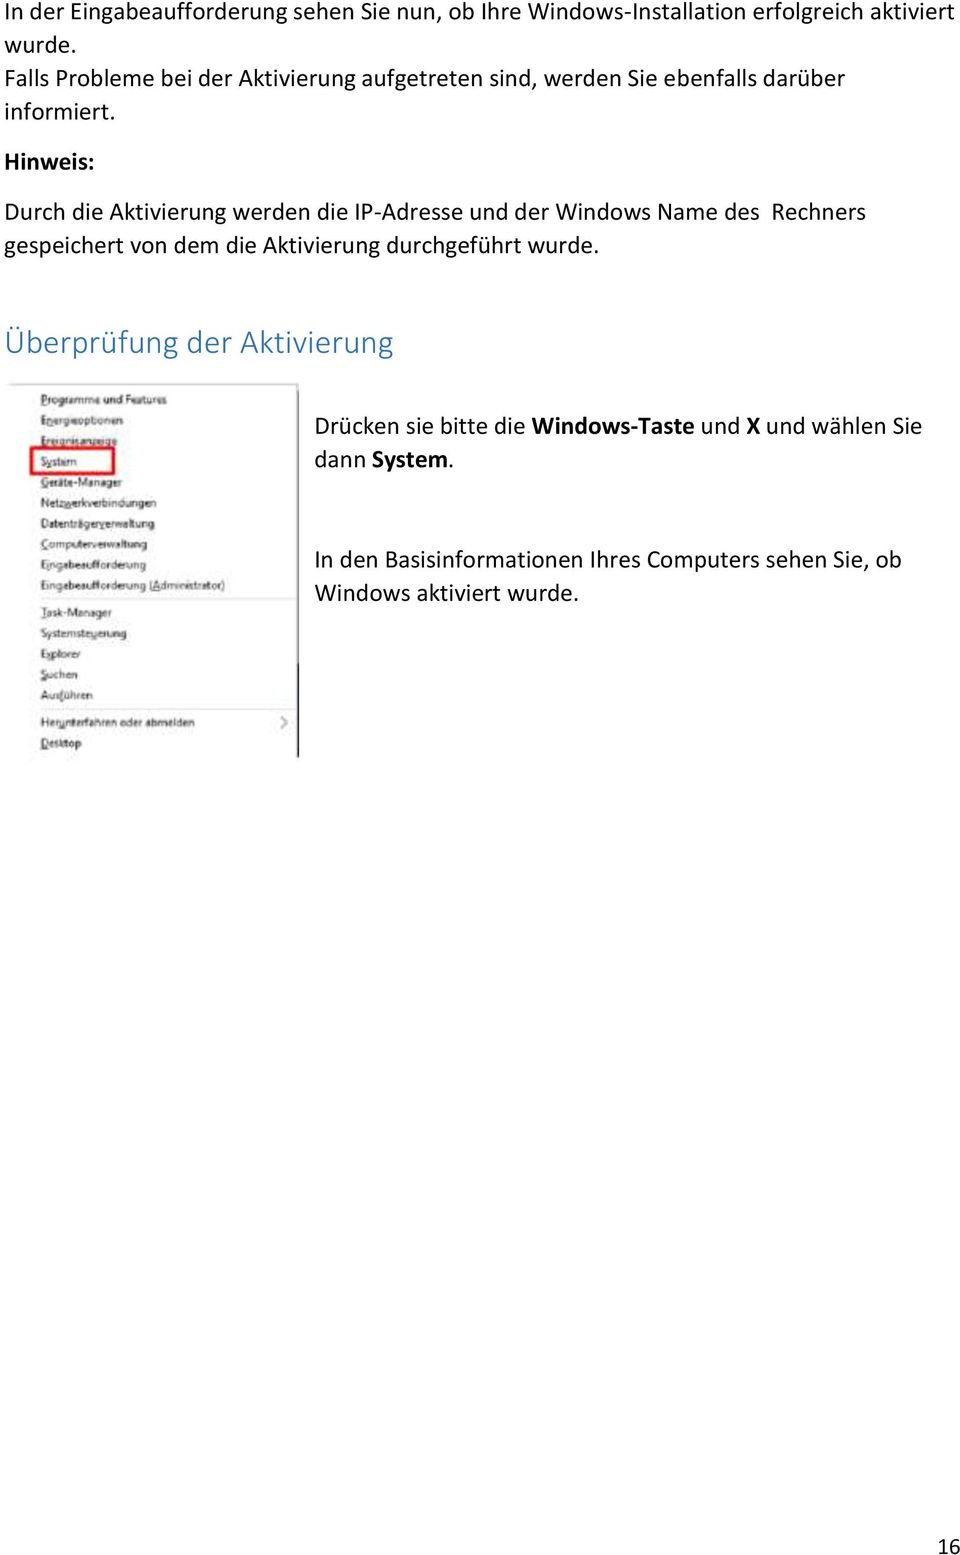 Hinweis: Durch die Aktivierung werden die IP-Adresse und der Windows Name des Rechners gespeichert von dem die Aktivierung